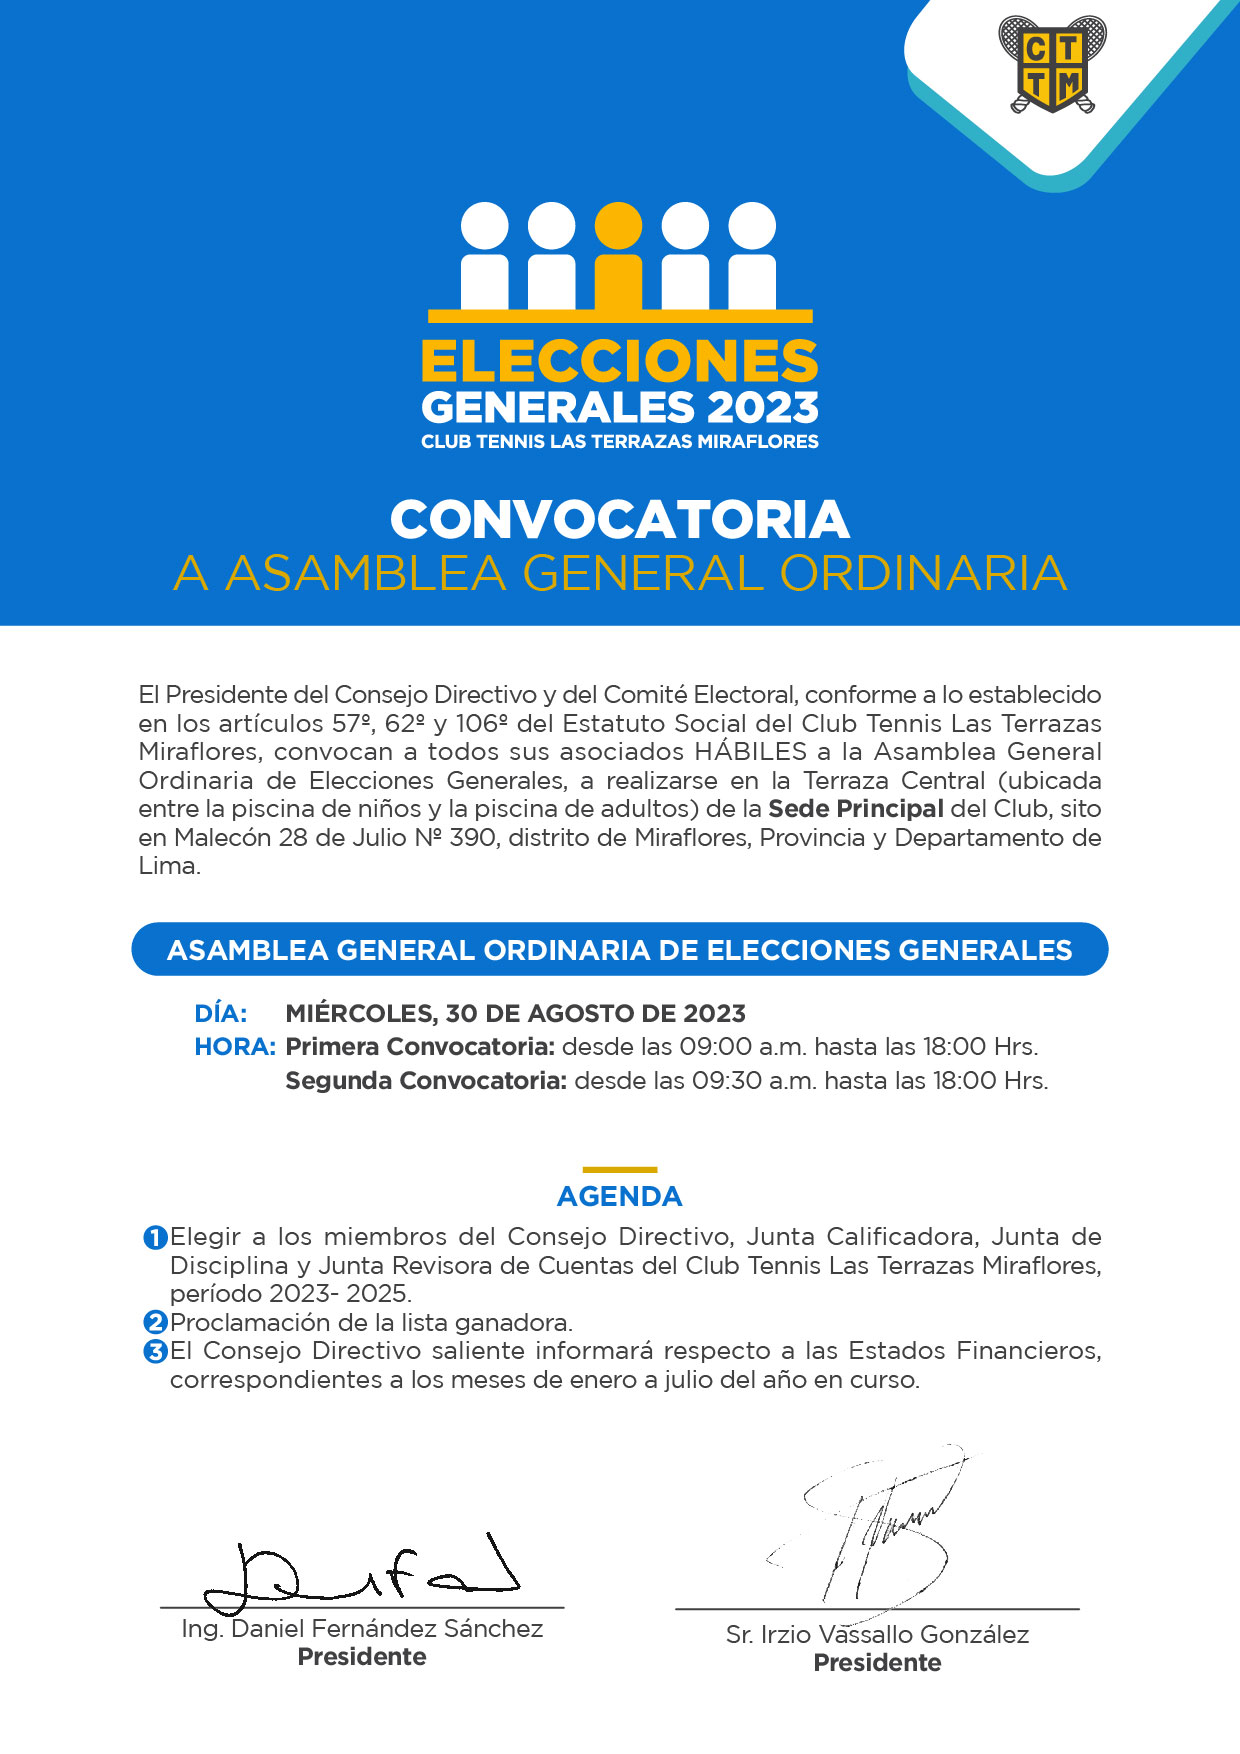 CONVOCATORIA ASAMBLEA GENERAL ORDINARIA DE ELECCIONES GENERALES DEL CLUB TENNIS LAS TERRAZAS MIRAFLORES